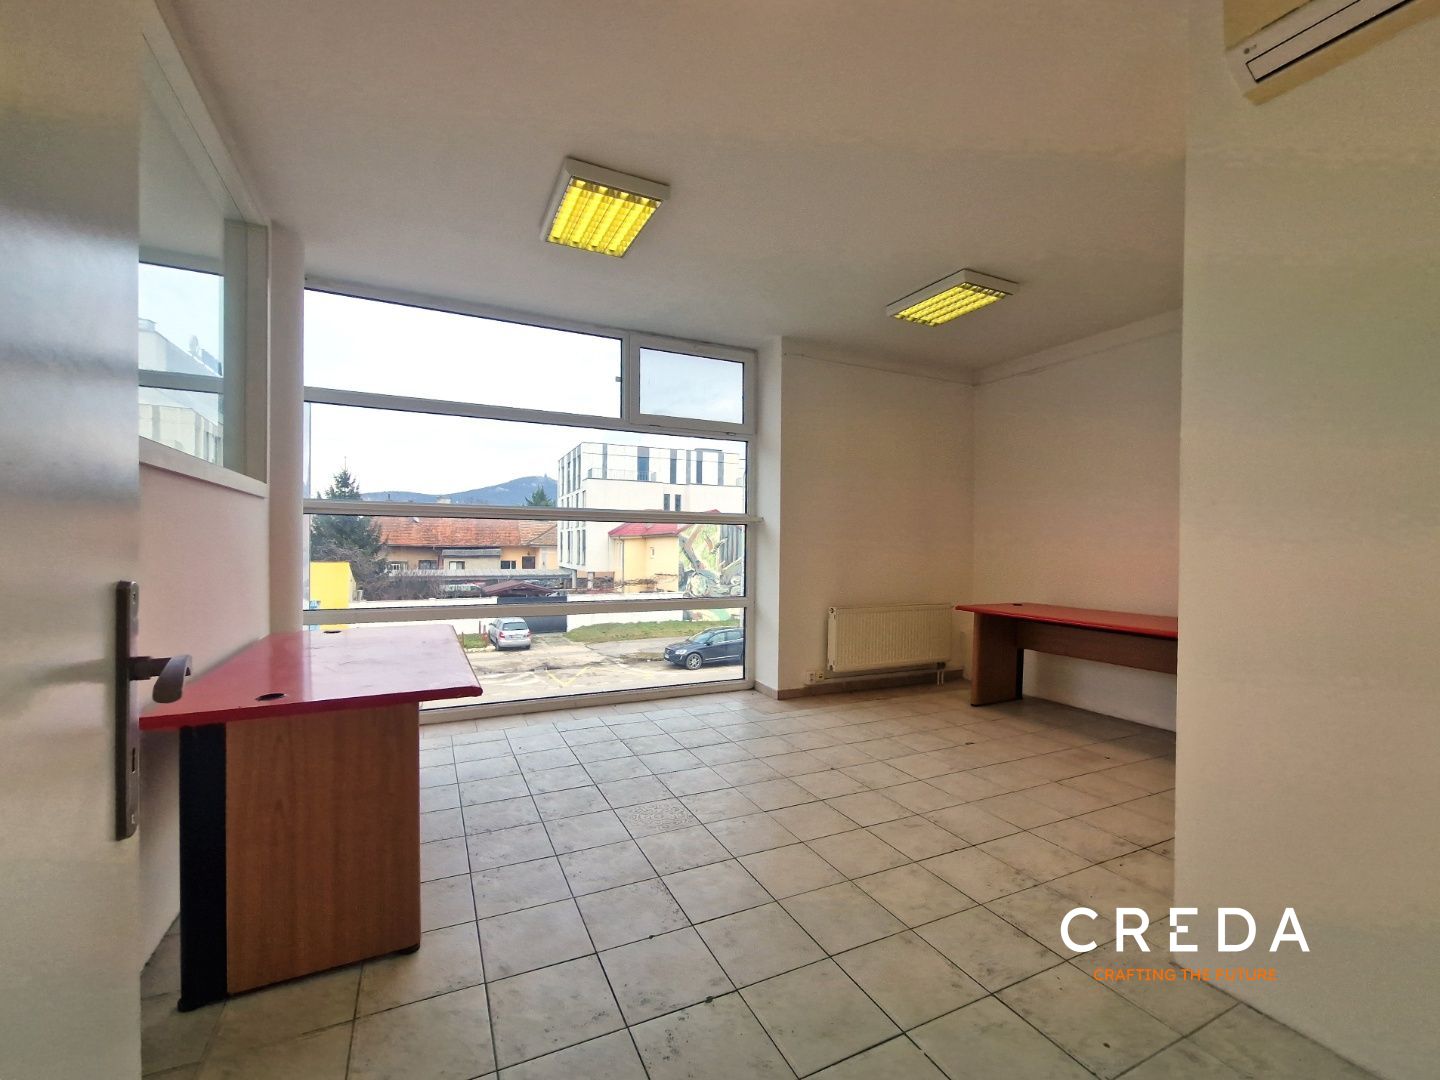 CREDA | prenájom komerčného priestoru 126 m2, Nitra